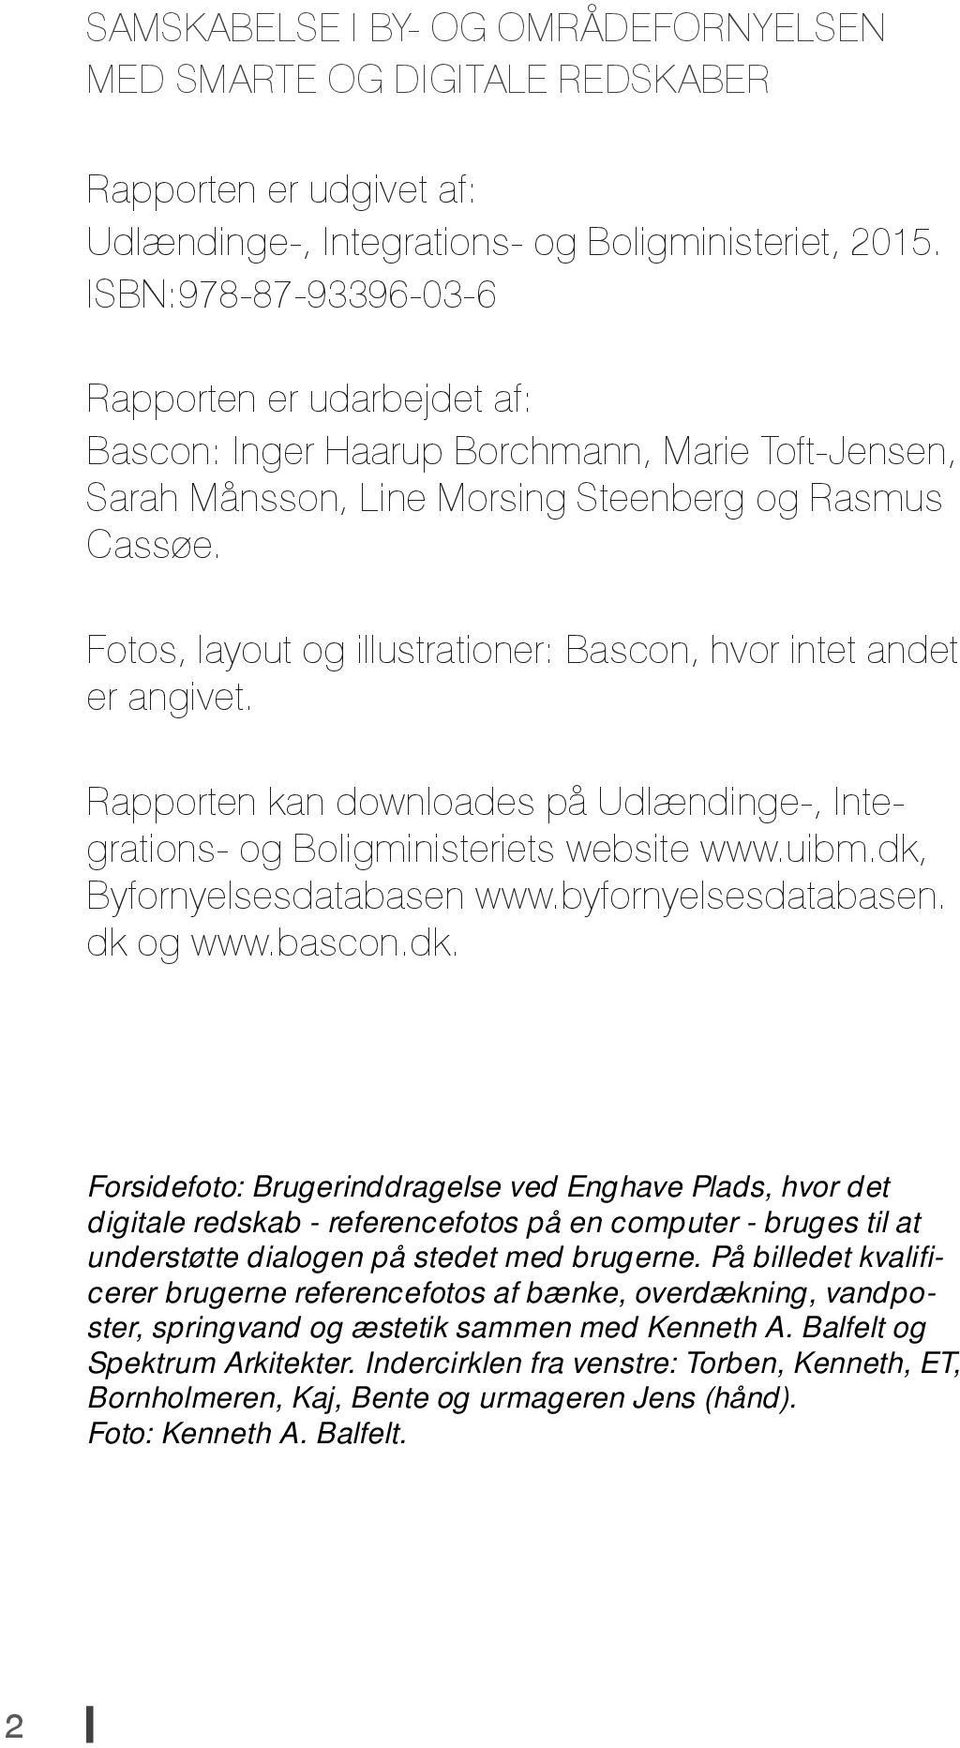 Fotos, layout og illustrationer: Bascon, hvor intet andet er angivet. Rapporten kan downloades på Udlændinge-, Integrations- og Boligministeriets website www.uibm.dk, Byfornyelsesdatabasen www.